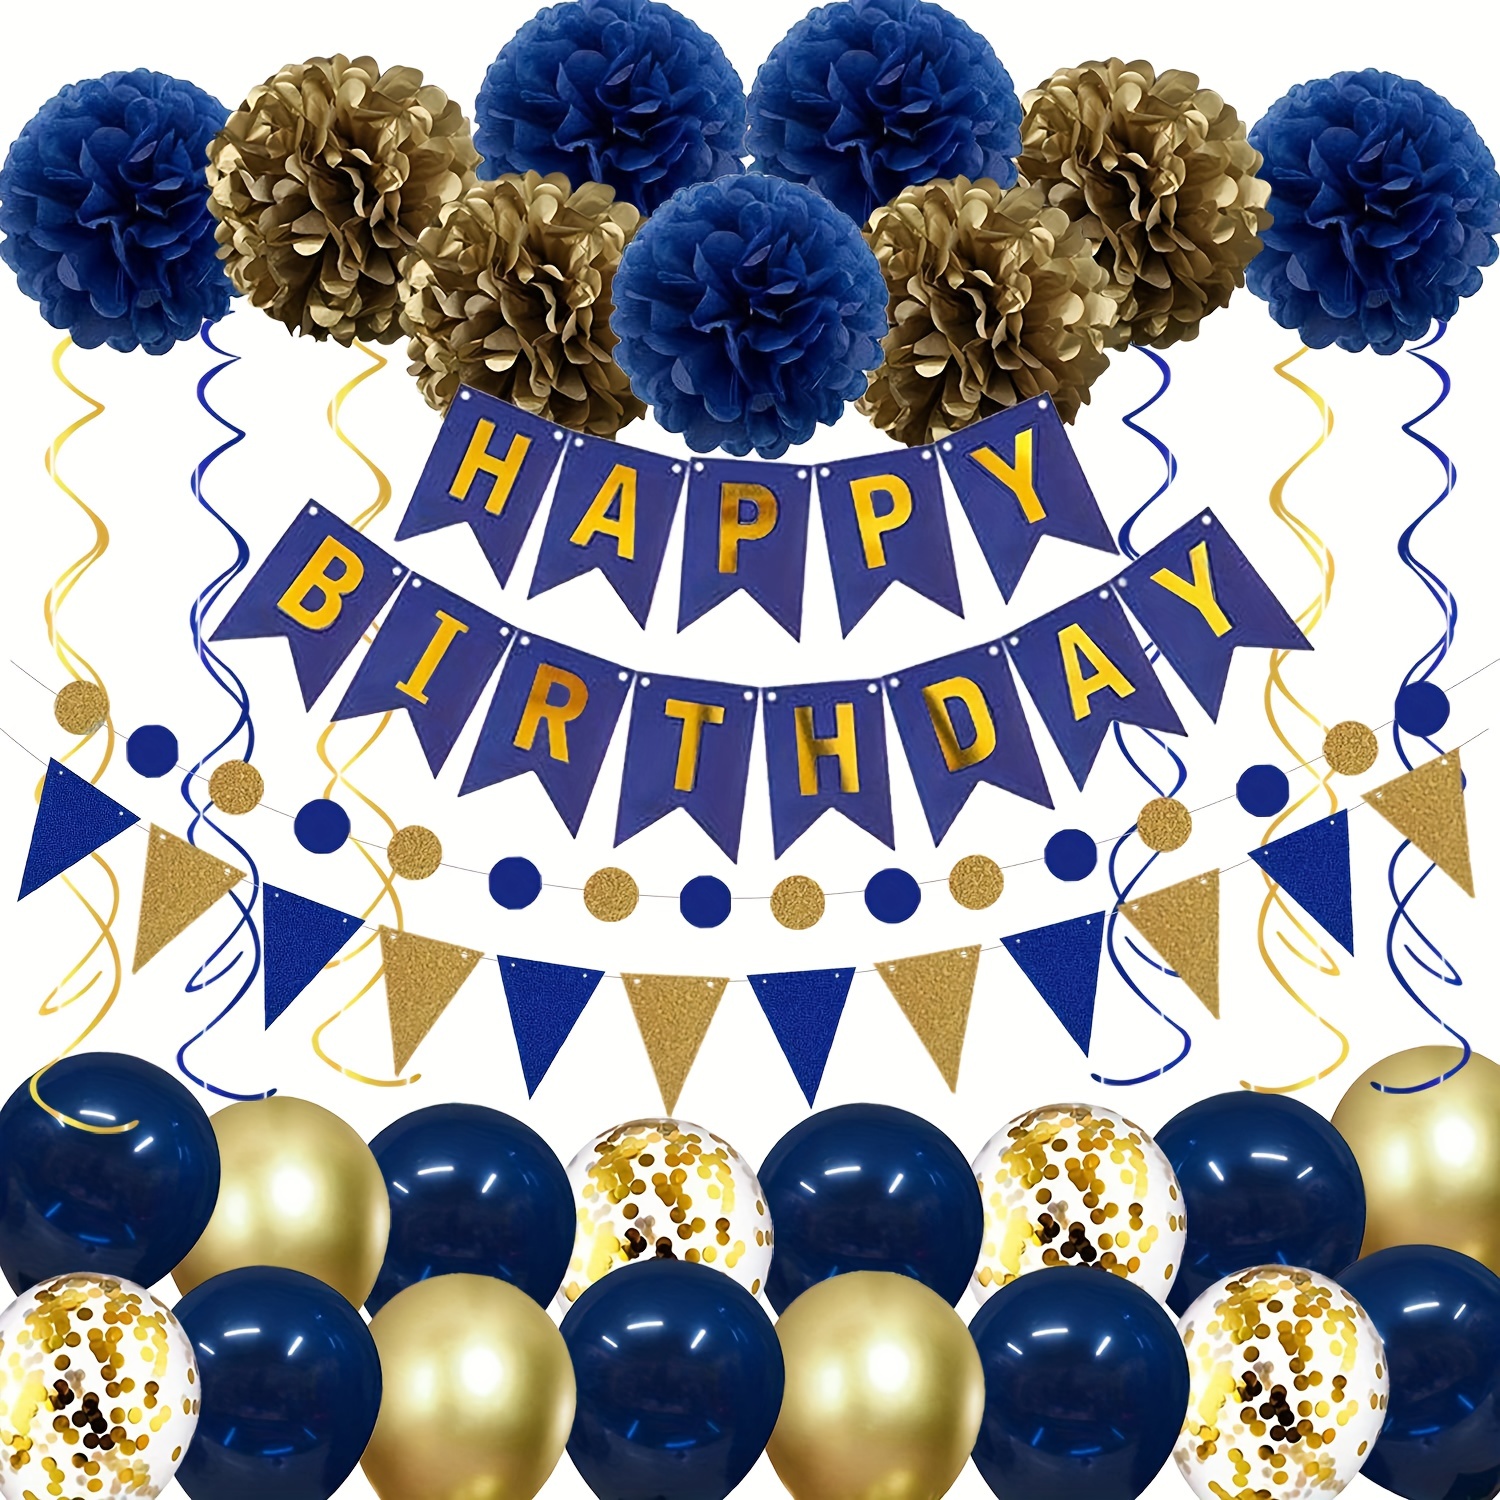  Decoraciones azules de 40 cumpleaños para hombres y mujeres,  pancarta de feliz cumpleaños 40 color azul marino y plateado, globos azules  de 40 cumpleaños para aniversario de 40 cumpleaños, suministros de